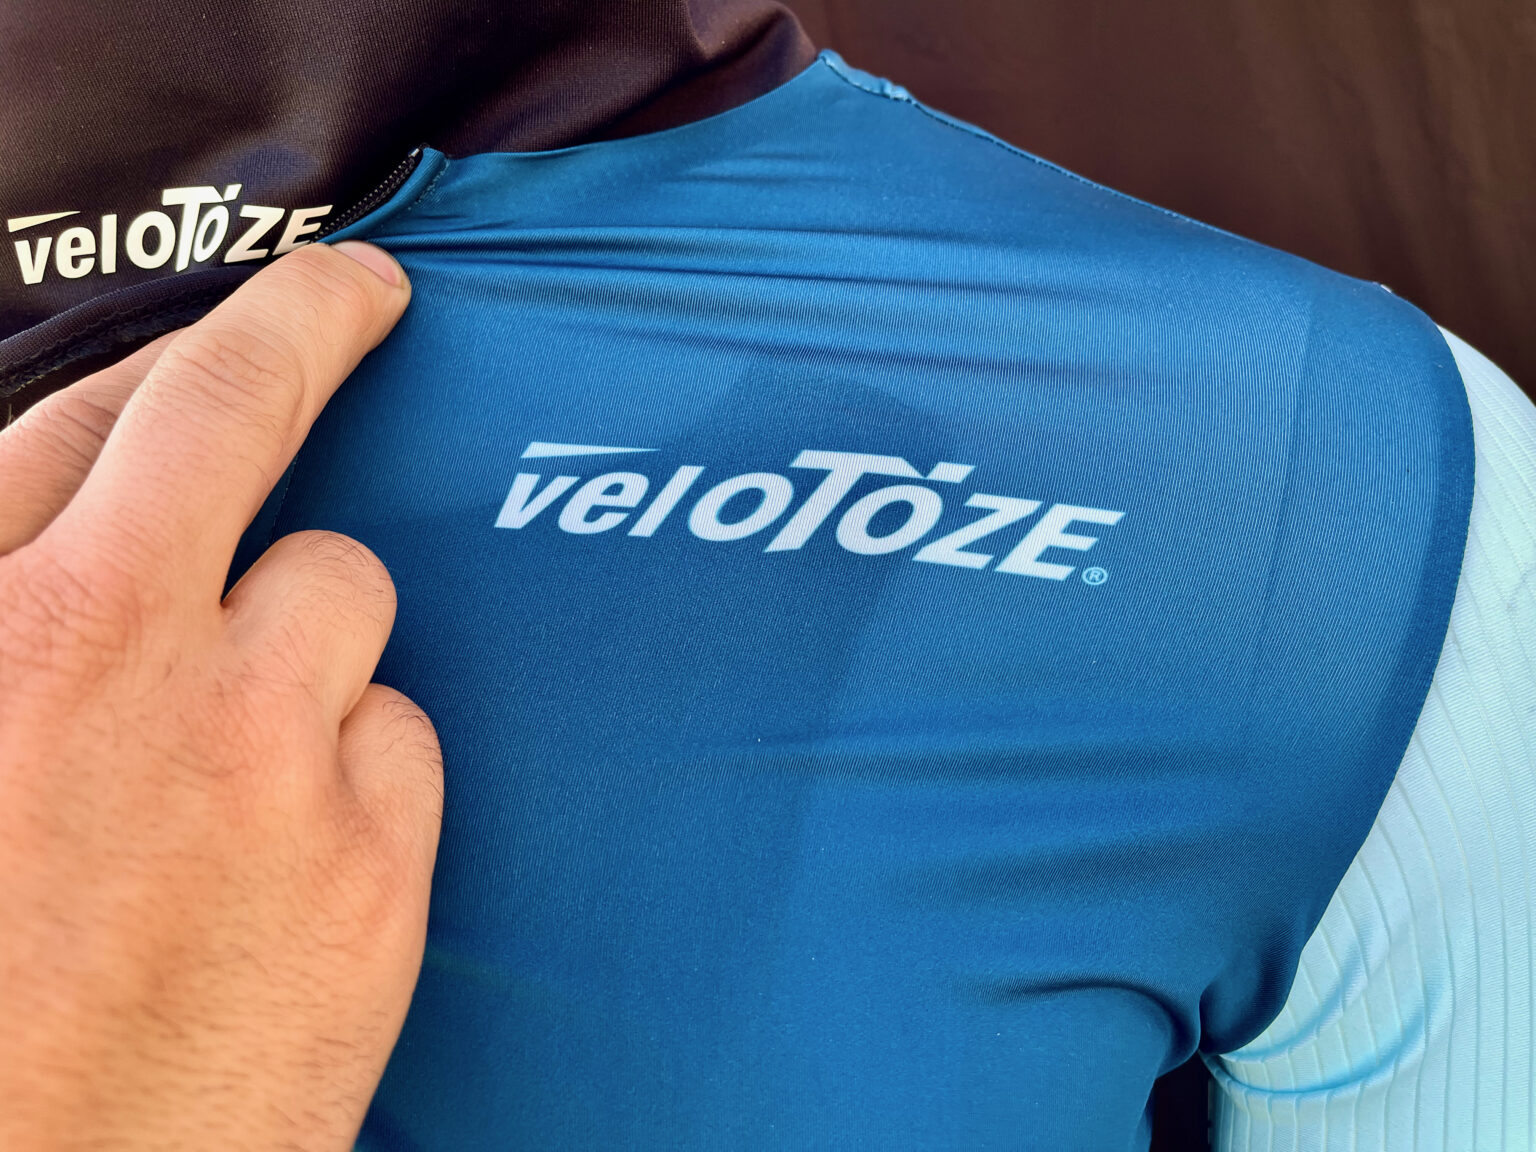 VeloToze kit logo